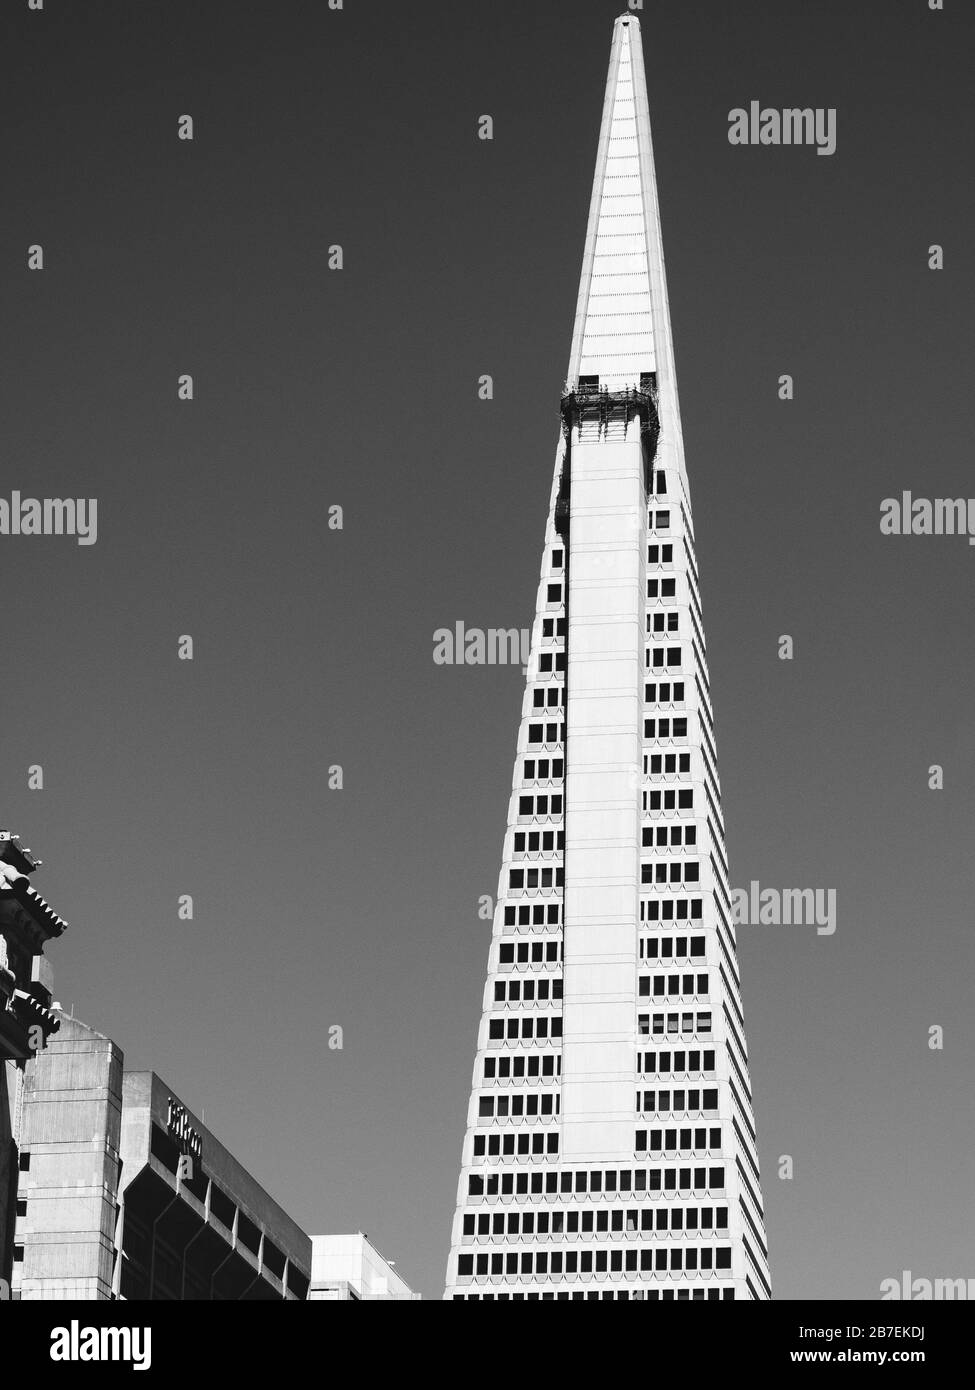 Nahaufnahme des oberen Teils des Transamerica Pyramid Building, San Francisco in Graustufen Stockfoto